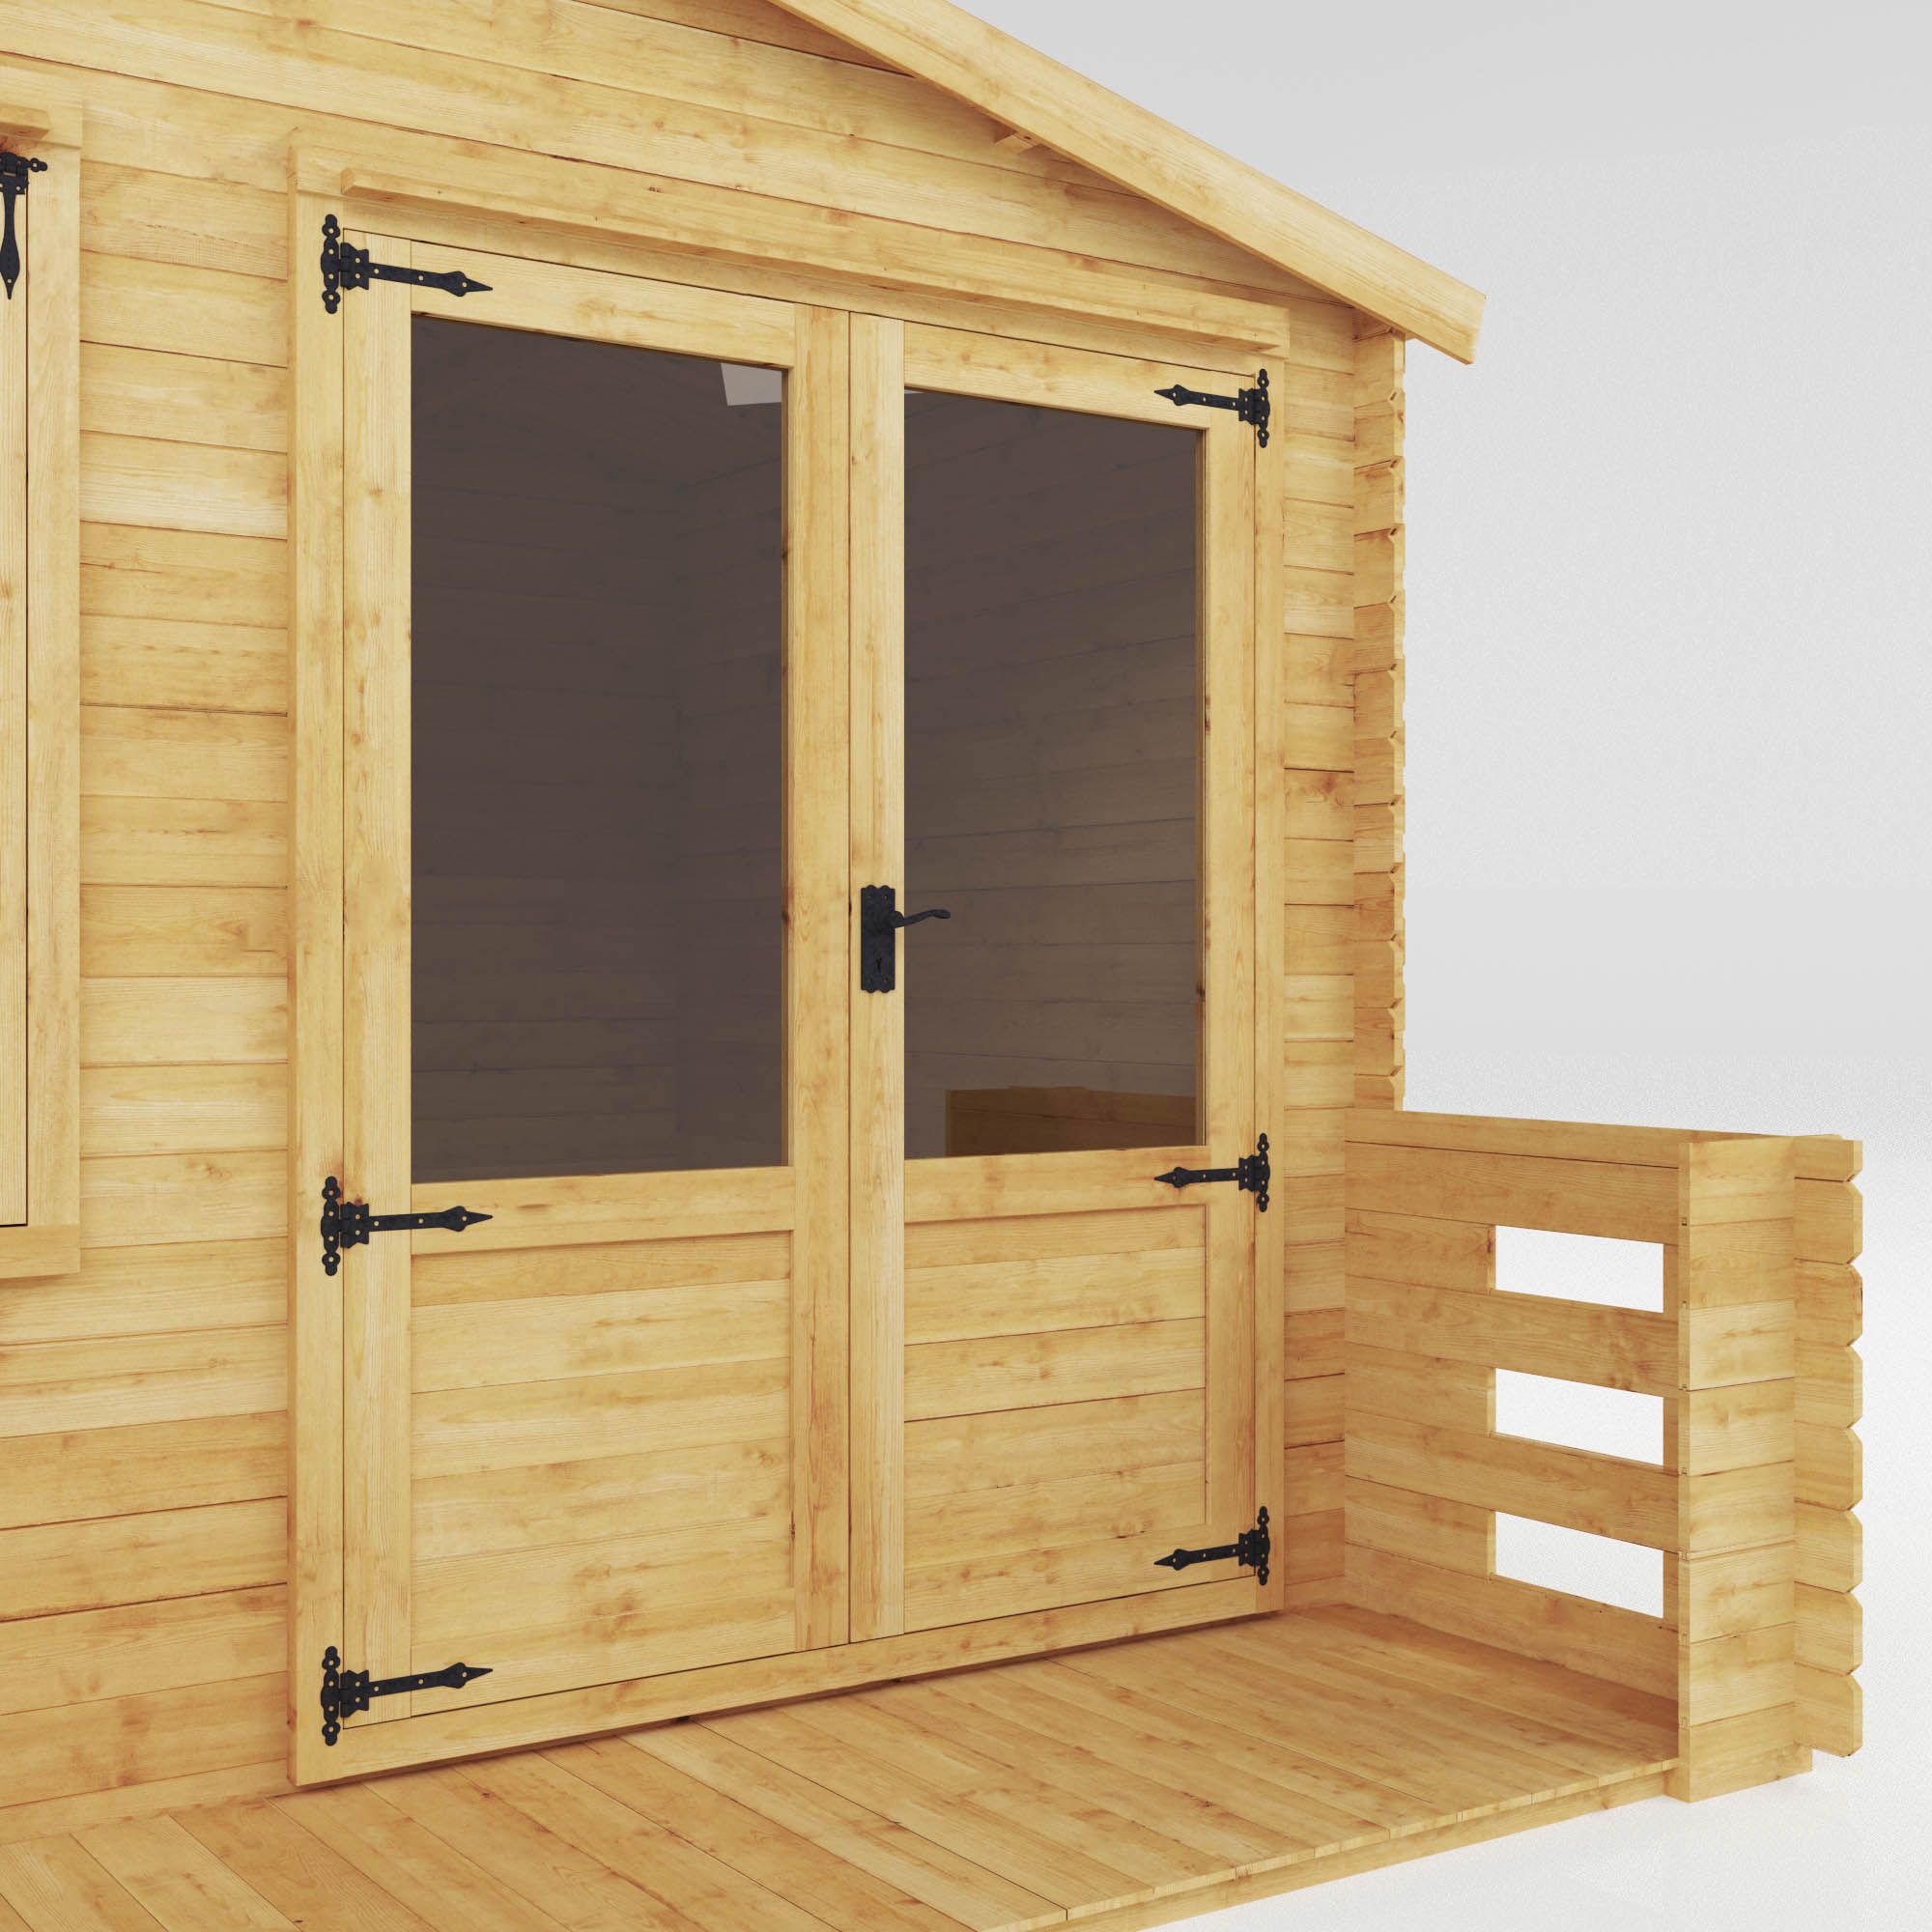 Mercia 11x11 ft with Double door Apex Cabin